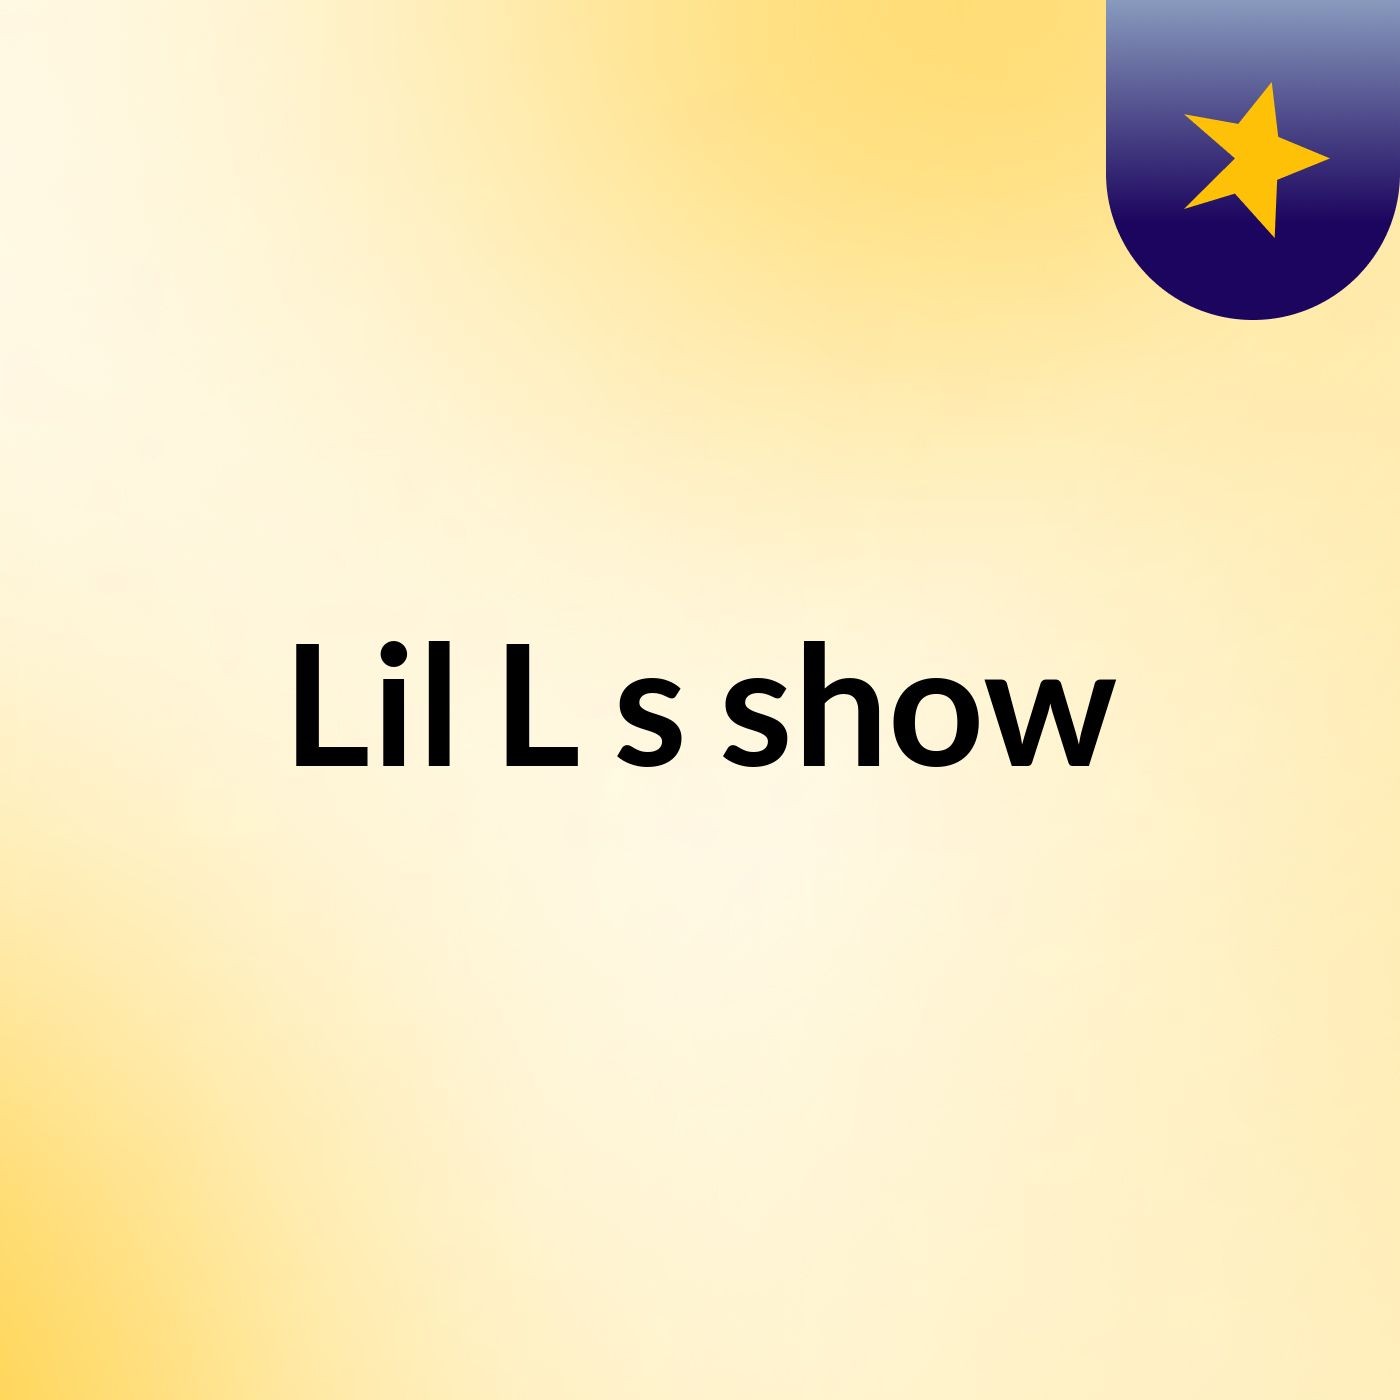 Lil L's show